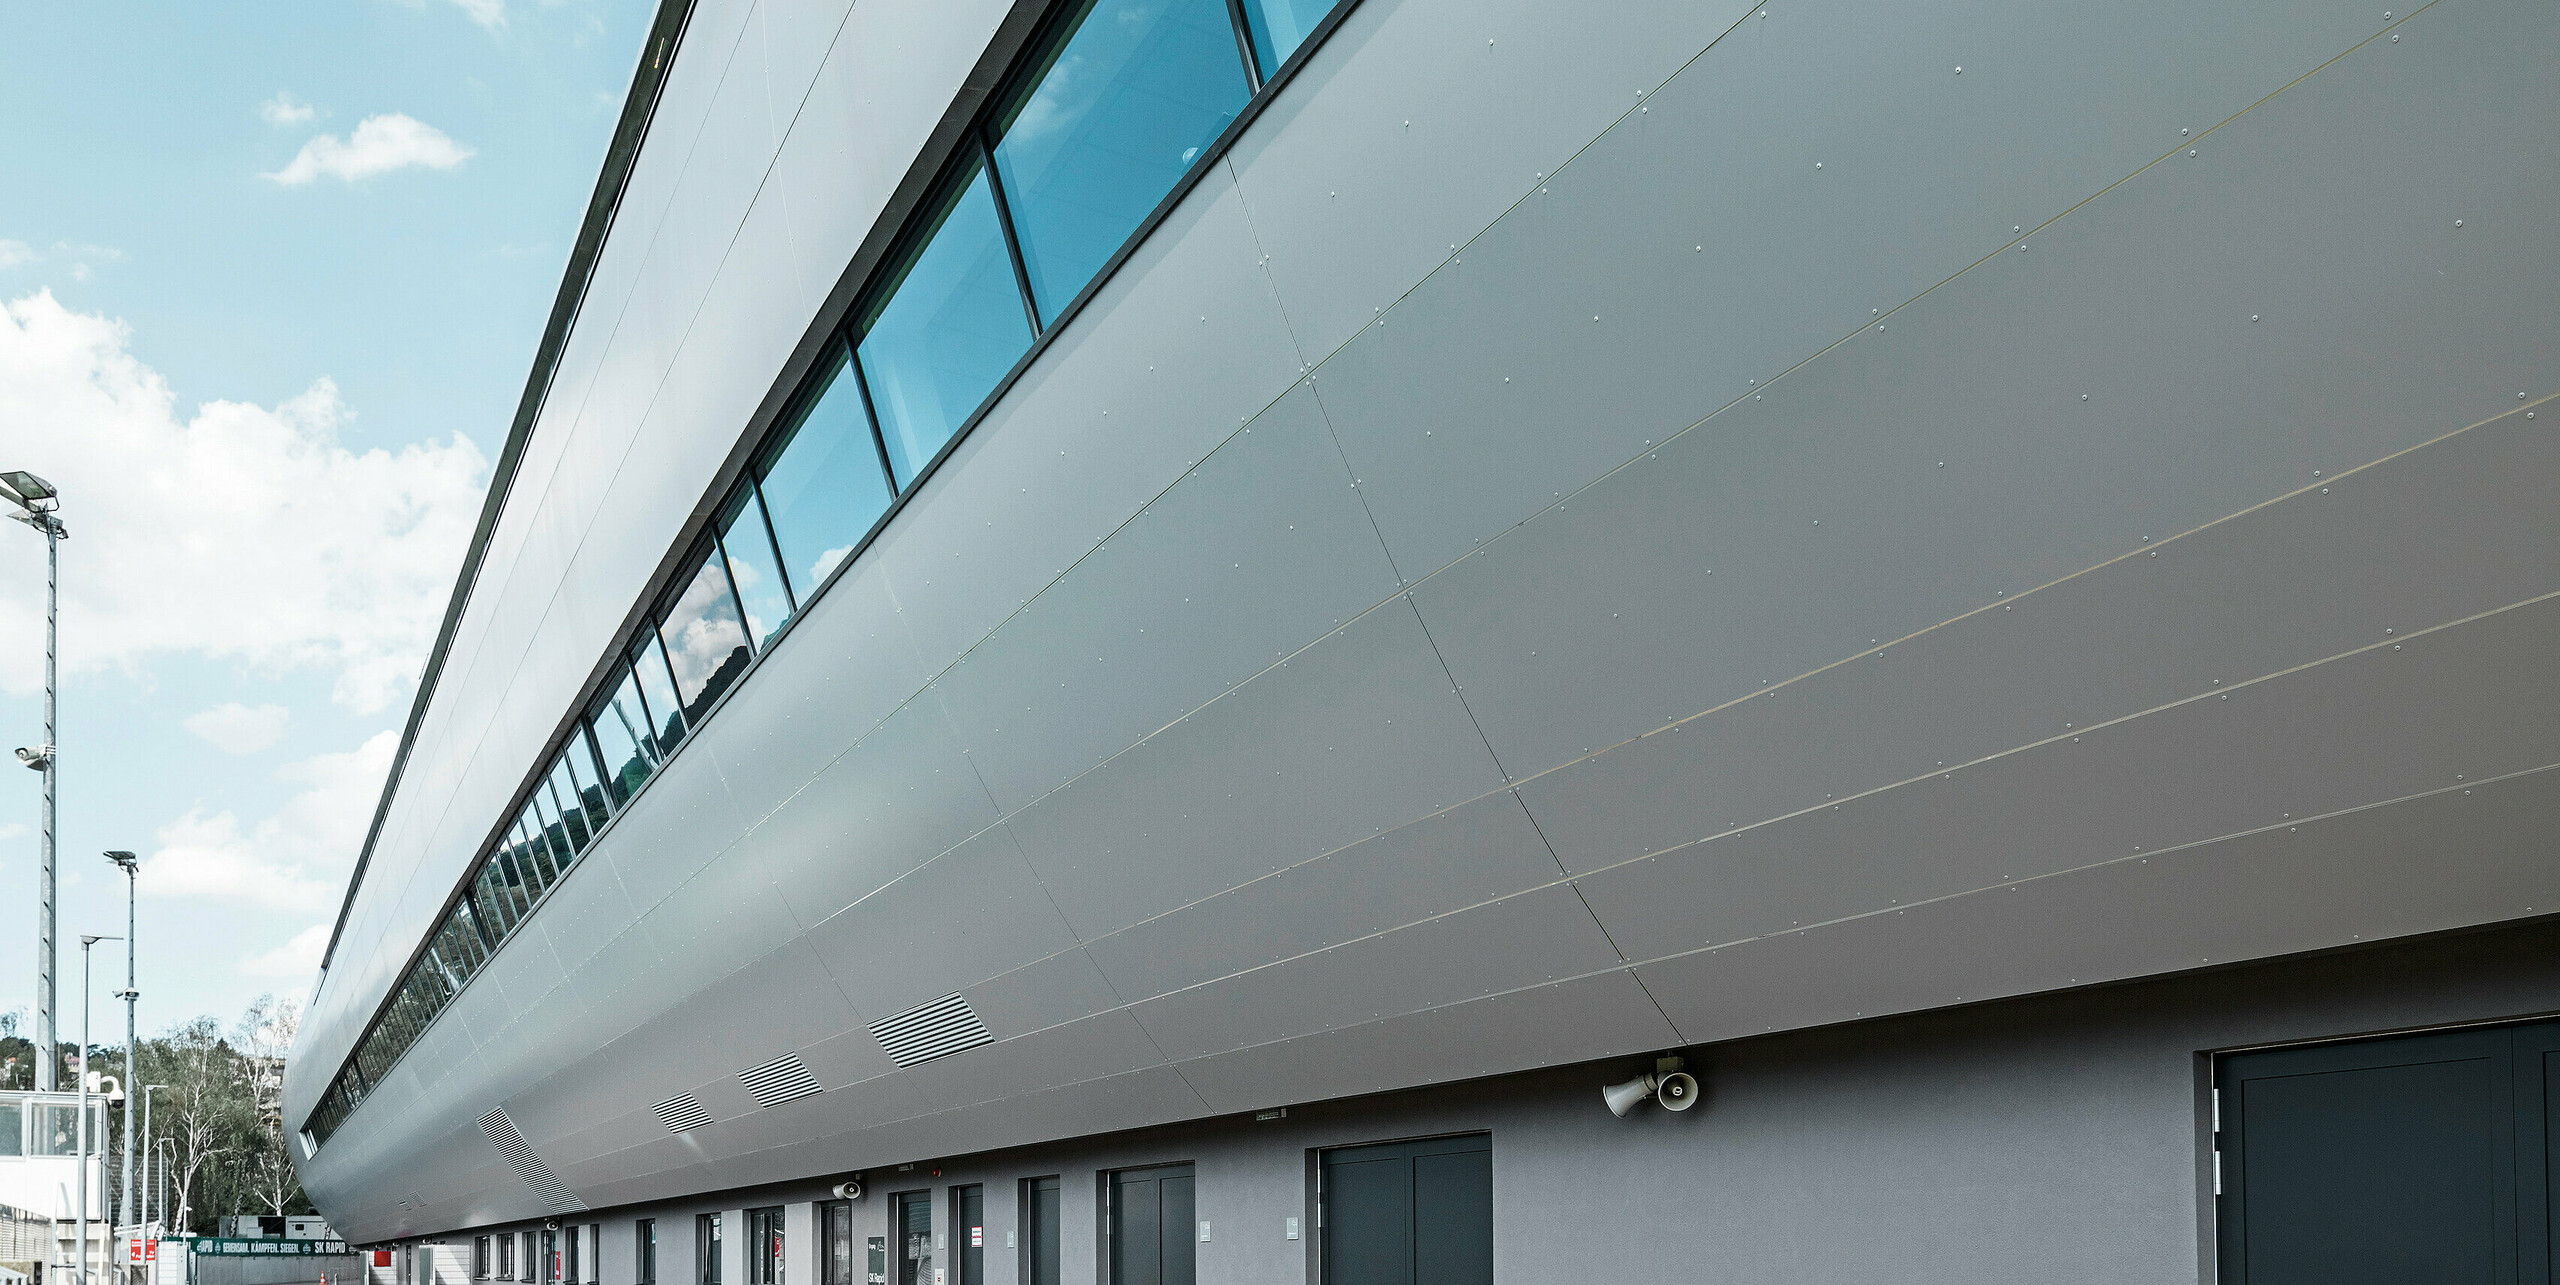 Seitenansicht des Allianz Stadions von SK Rapid Wien, verkleidet mit PREFA Aluminium Verbundplatten in Silbermetallic. Die Fassade zeigt die beeindruckende Länge und klare Linienführung des Bauwerks, während die großflächigen Fenster den Blick zum Trainingsplatz rahmen. In den Fensterscheiben reflektiert der blaue Himmel. Die hochwertige Metallverkleidung verkörpert Beständigkeit und moderne Architektur.